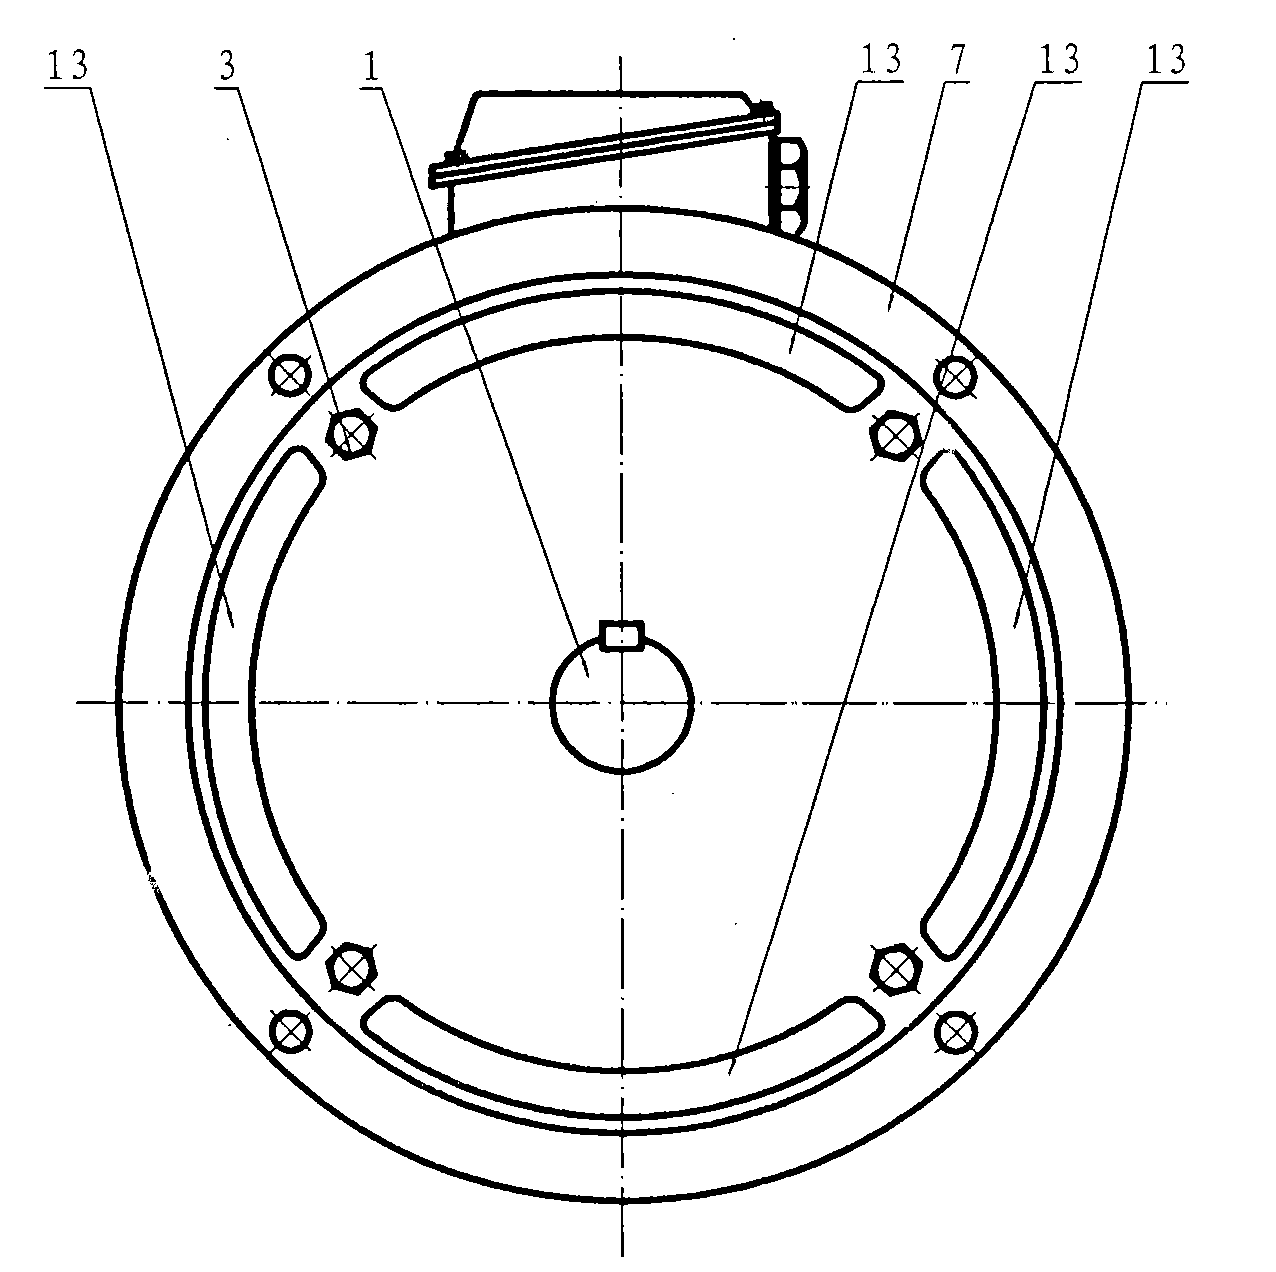 Drive motor of centrifugal fan